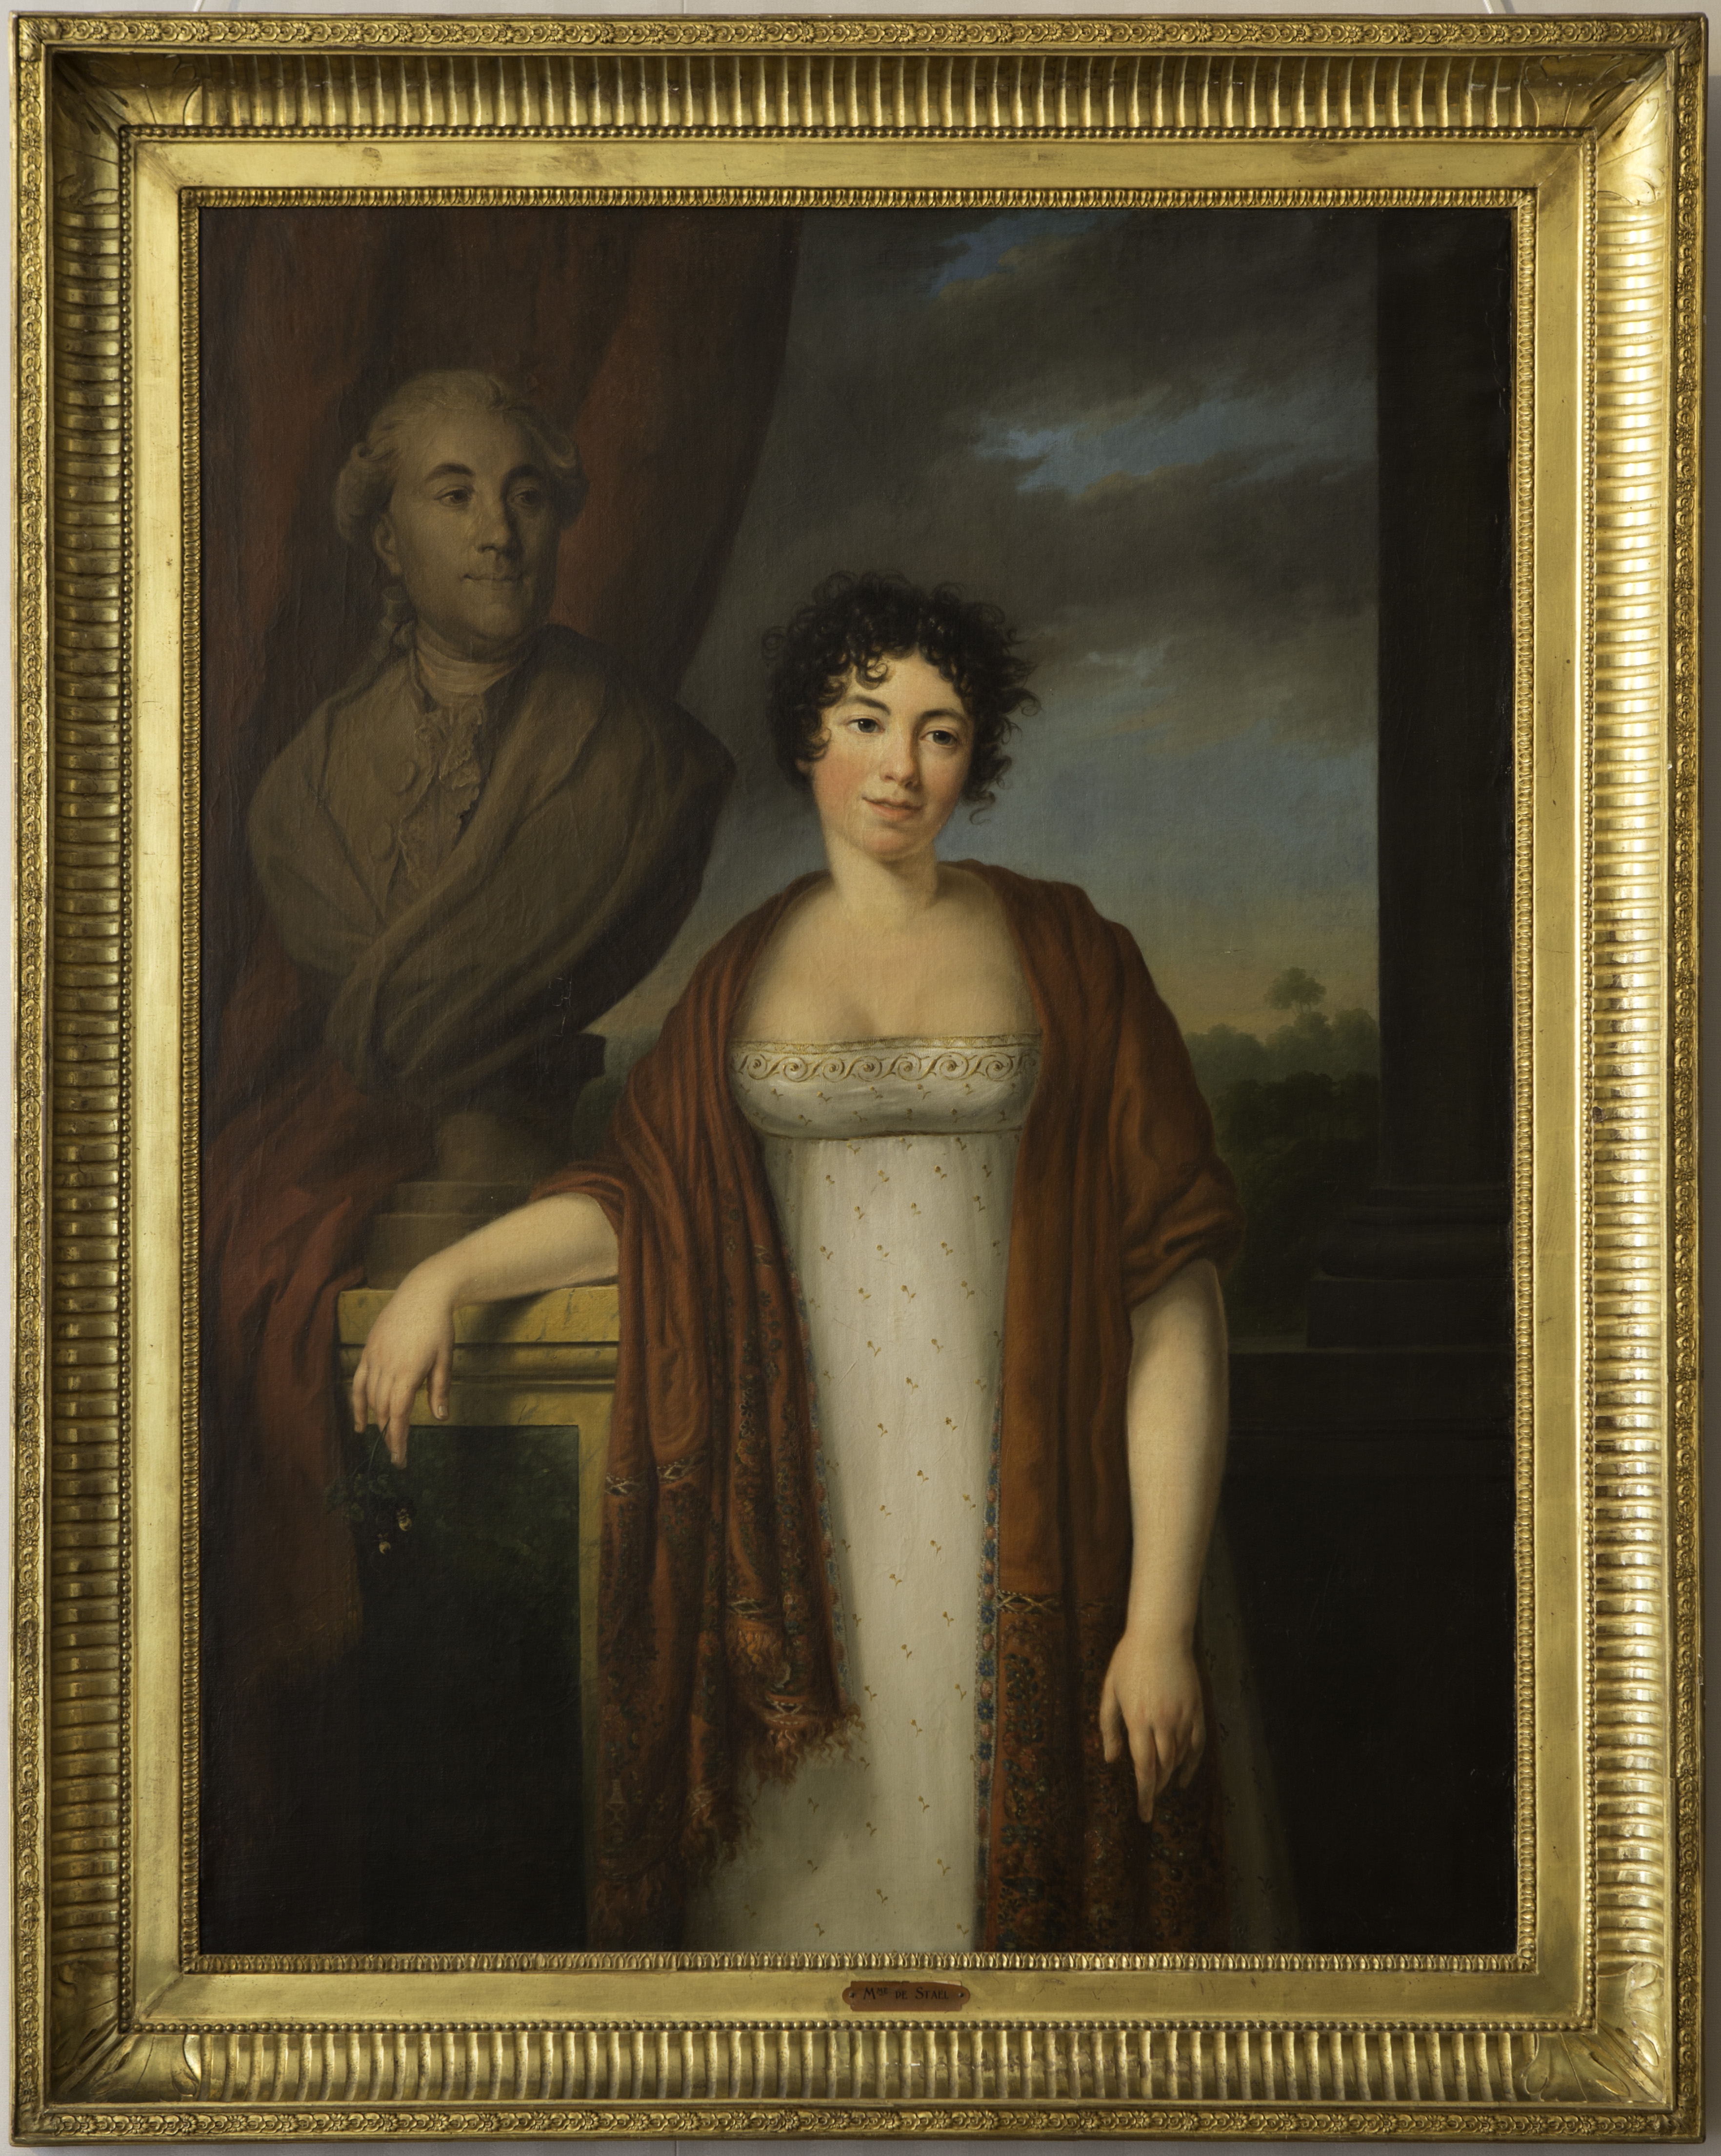 Portrait de Mde de Staël et buste Necker. Source Fondation O d'Haussonville